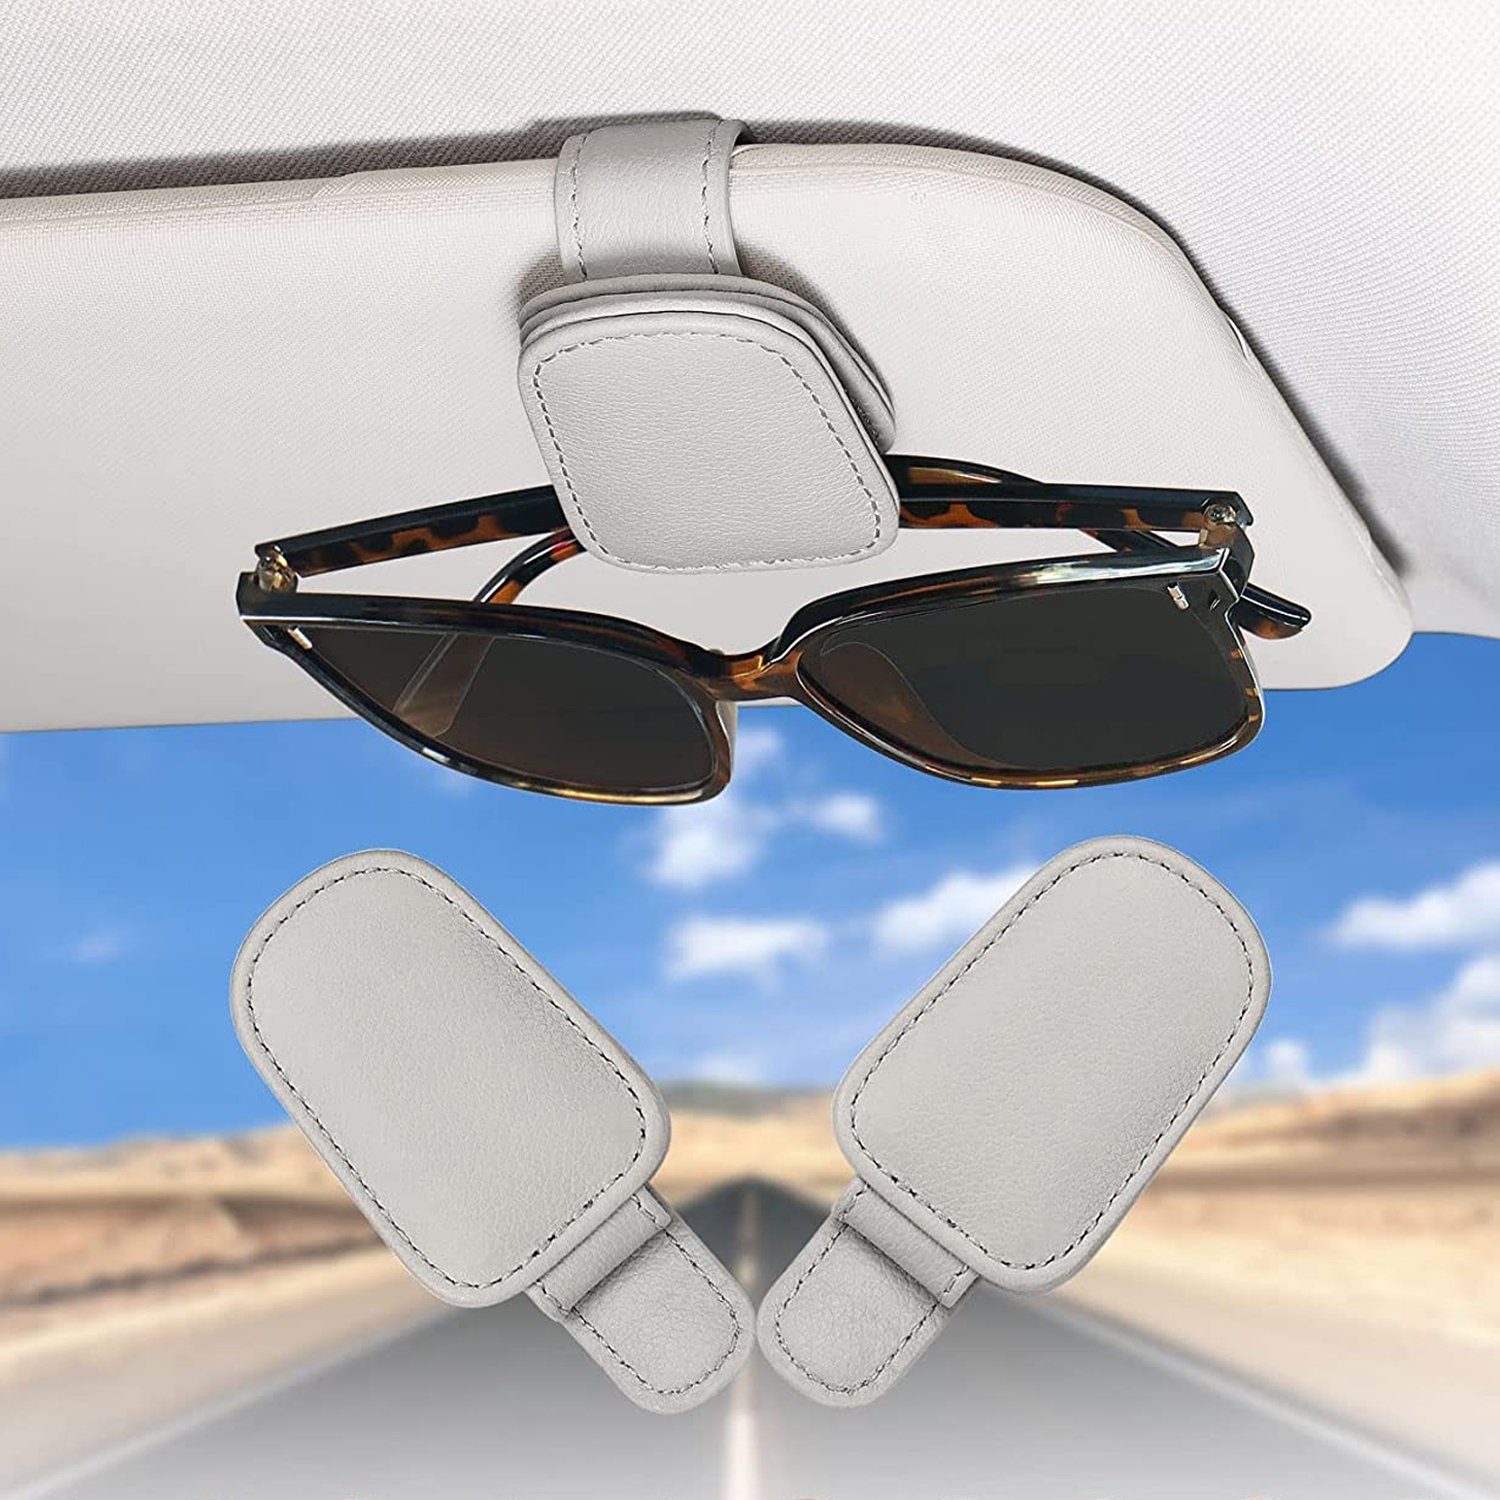 2 PCS Brillenhalter für Auto Sonnenblende,Sonnenbrillenhalter